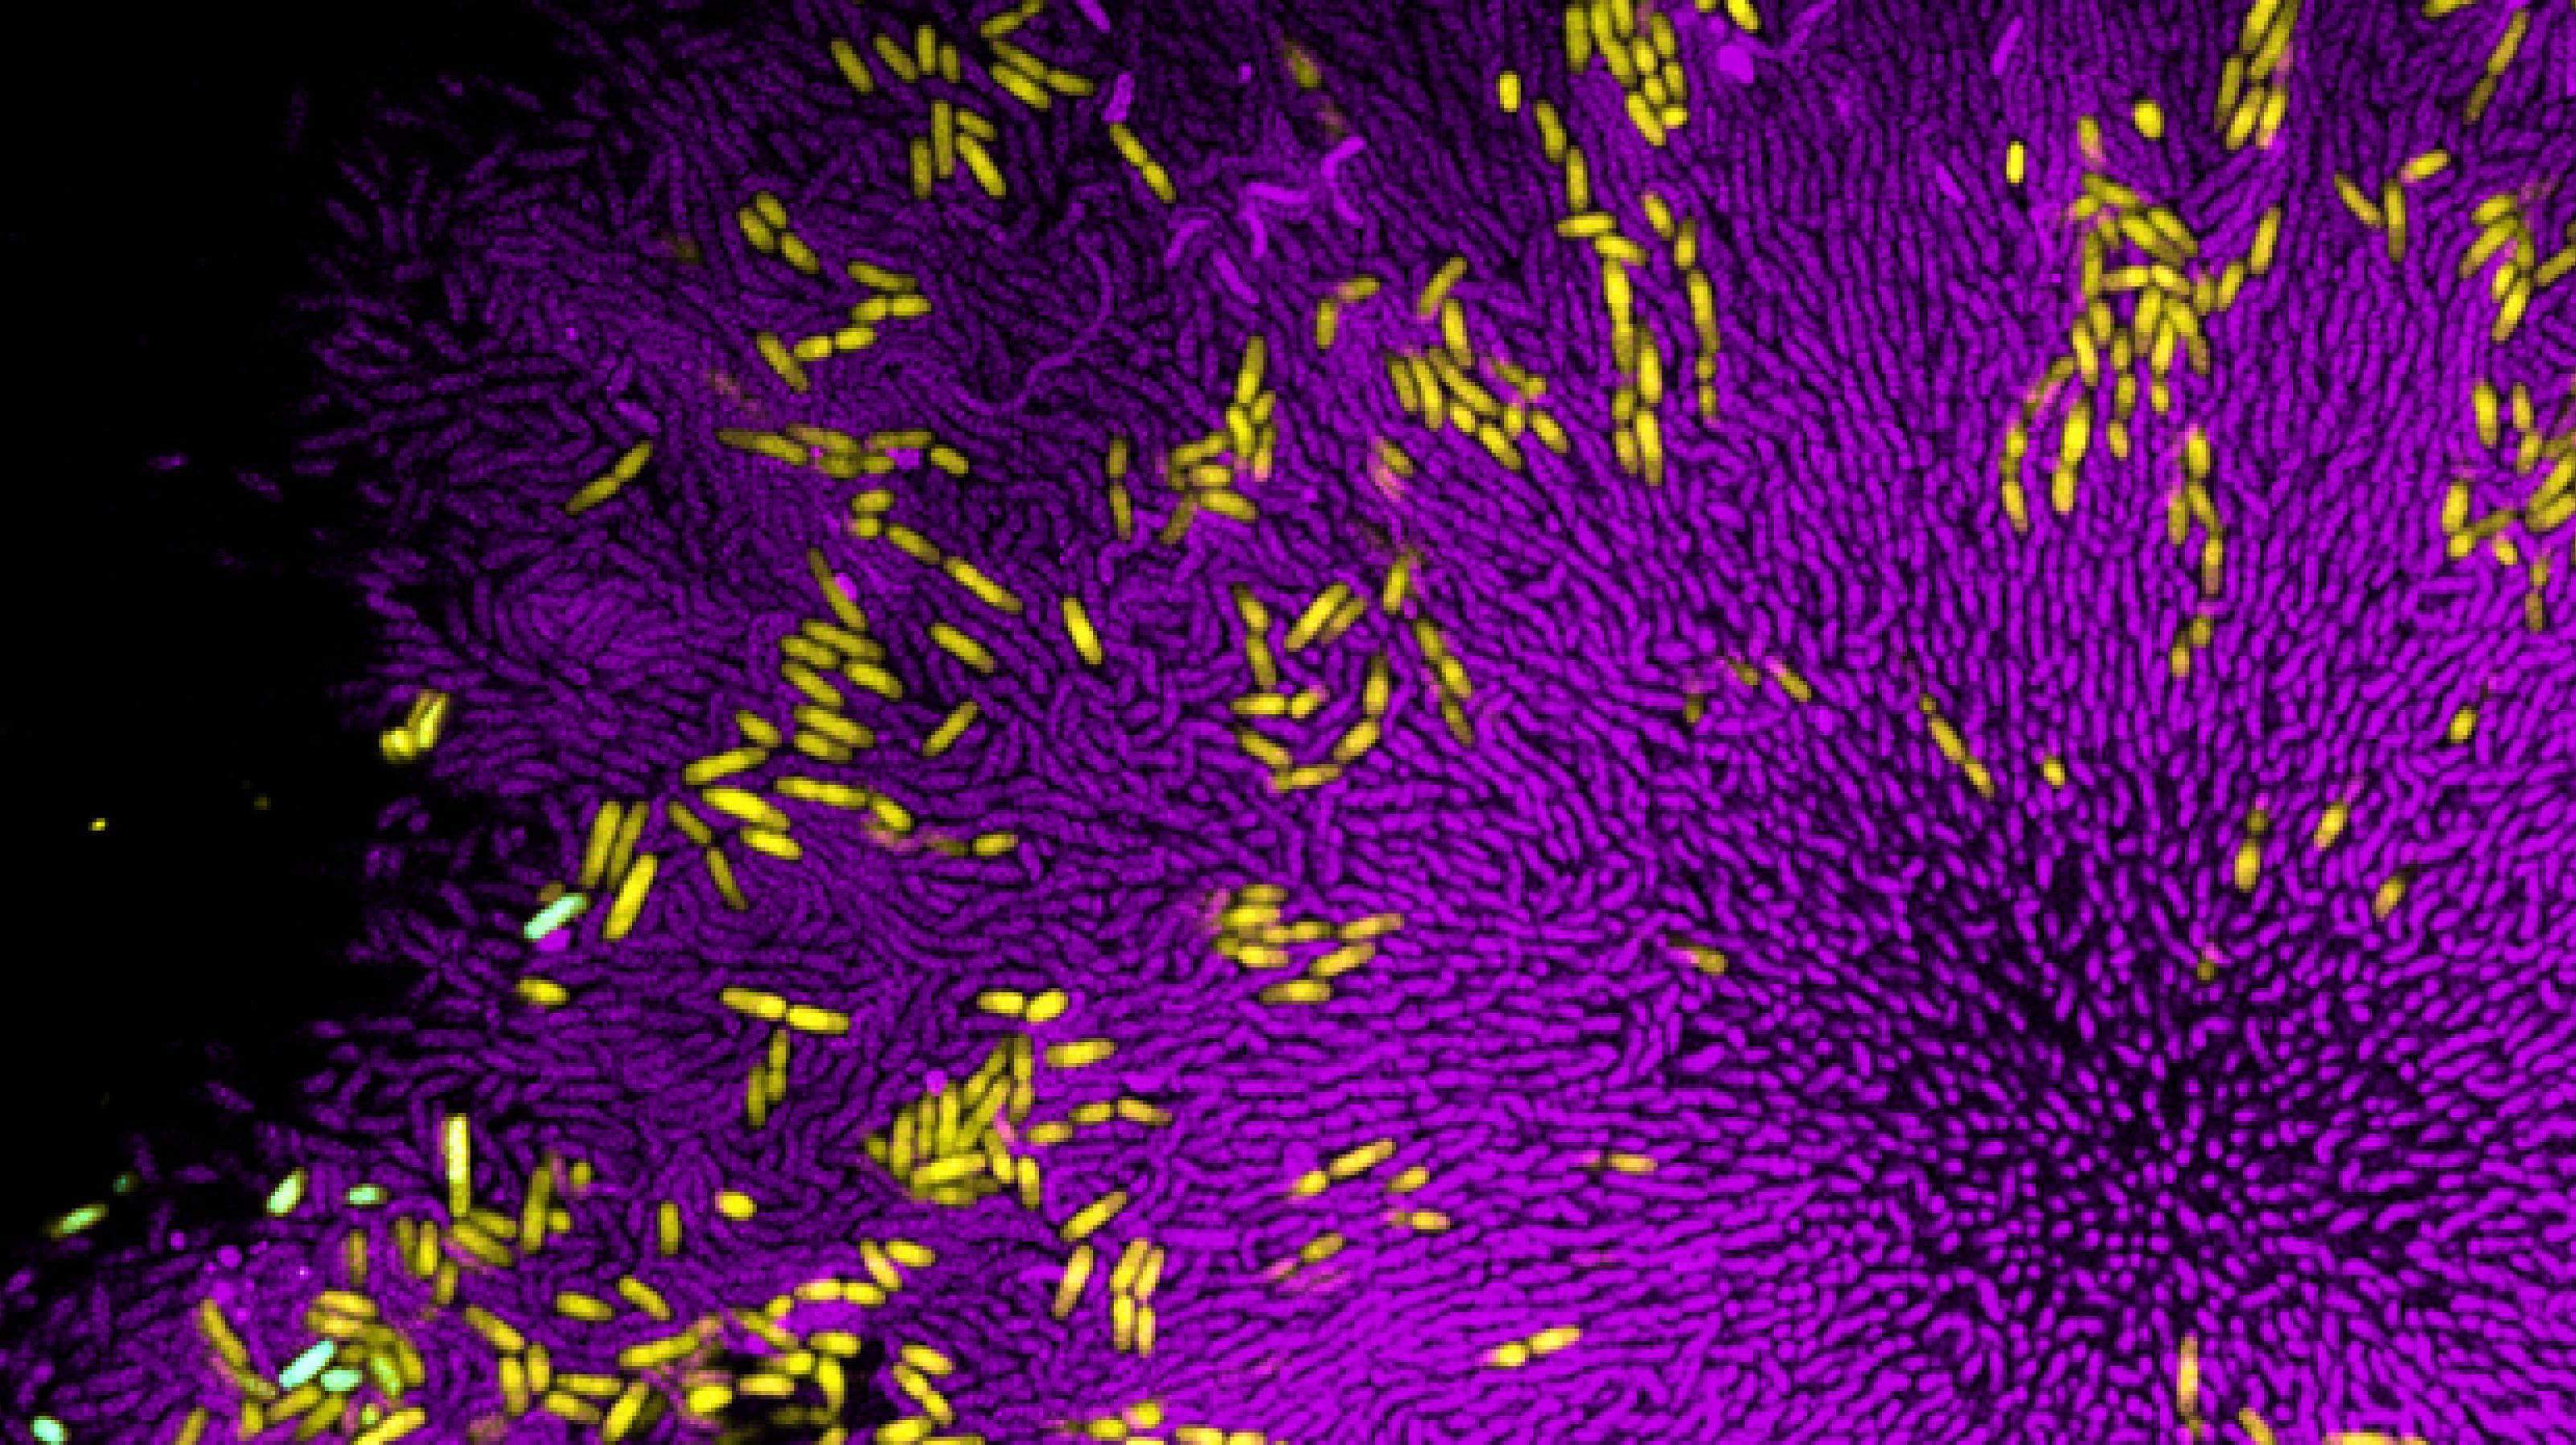 Mikroskopische Aufnahme eine bakteriellen Biofilms, bei dem nur einzelne, kräftig gefärbte Mikroben zu erkennen sind. Gelbe Colibakterien sind verstreut auf einem Rasen aus lila Cholera-Erregern.